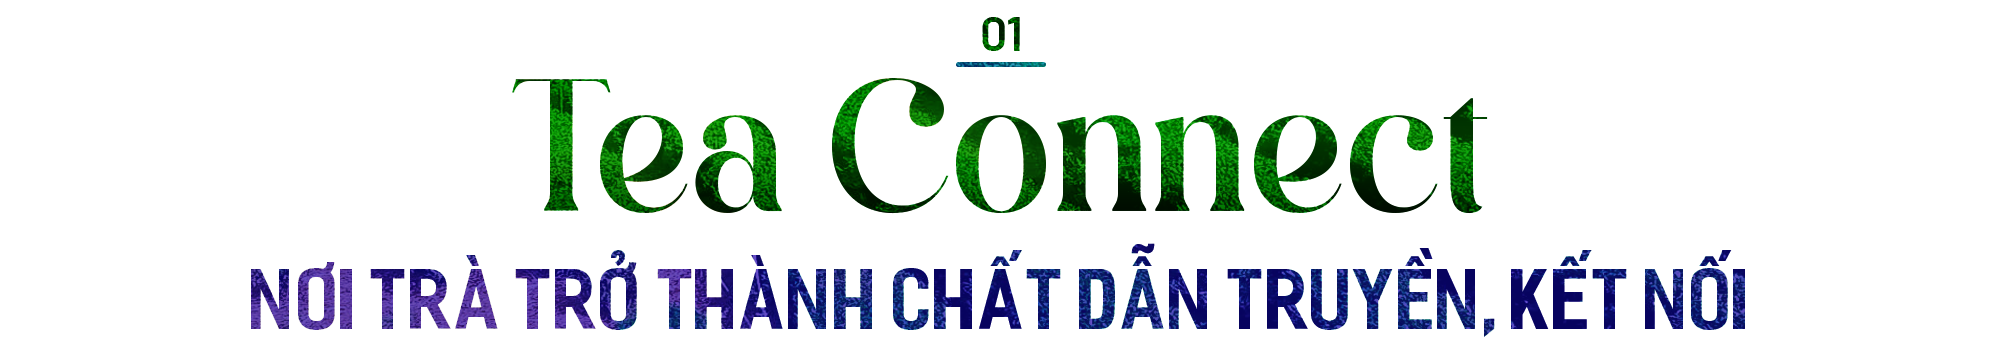 Tea Connect – một khái niệm mới trong công tác đối ngoại, đưa văn hóa trà Việt ra khắp thế giới - Ảnh 1.